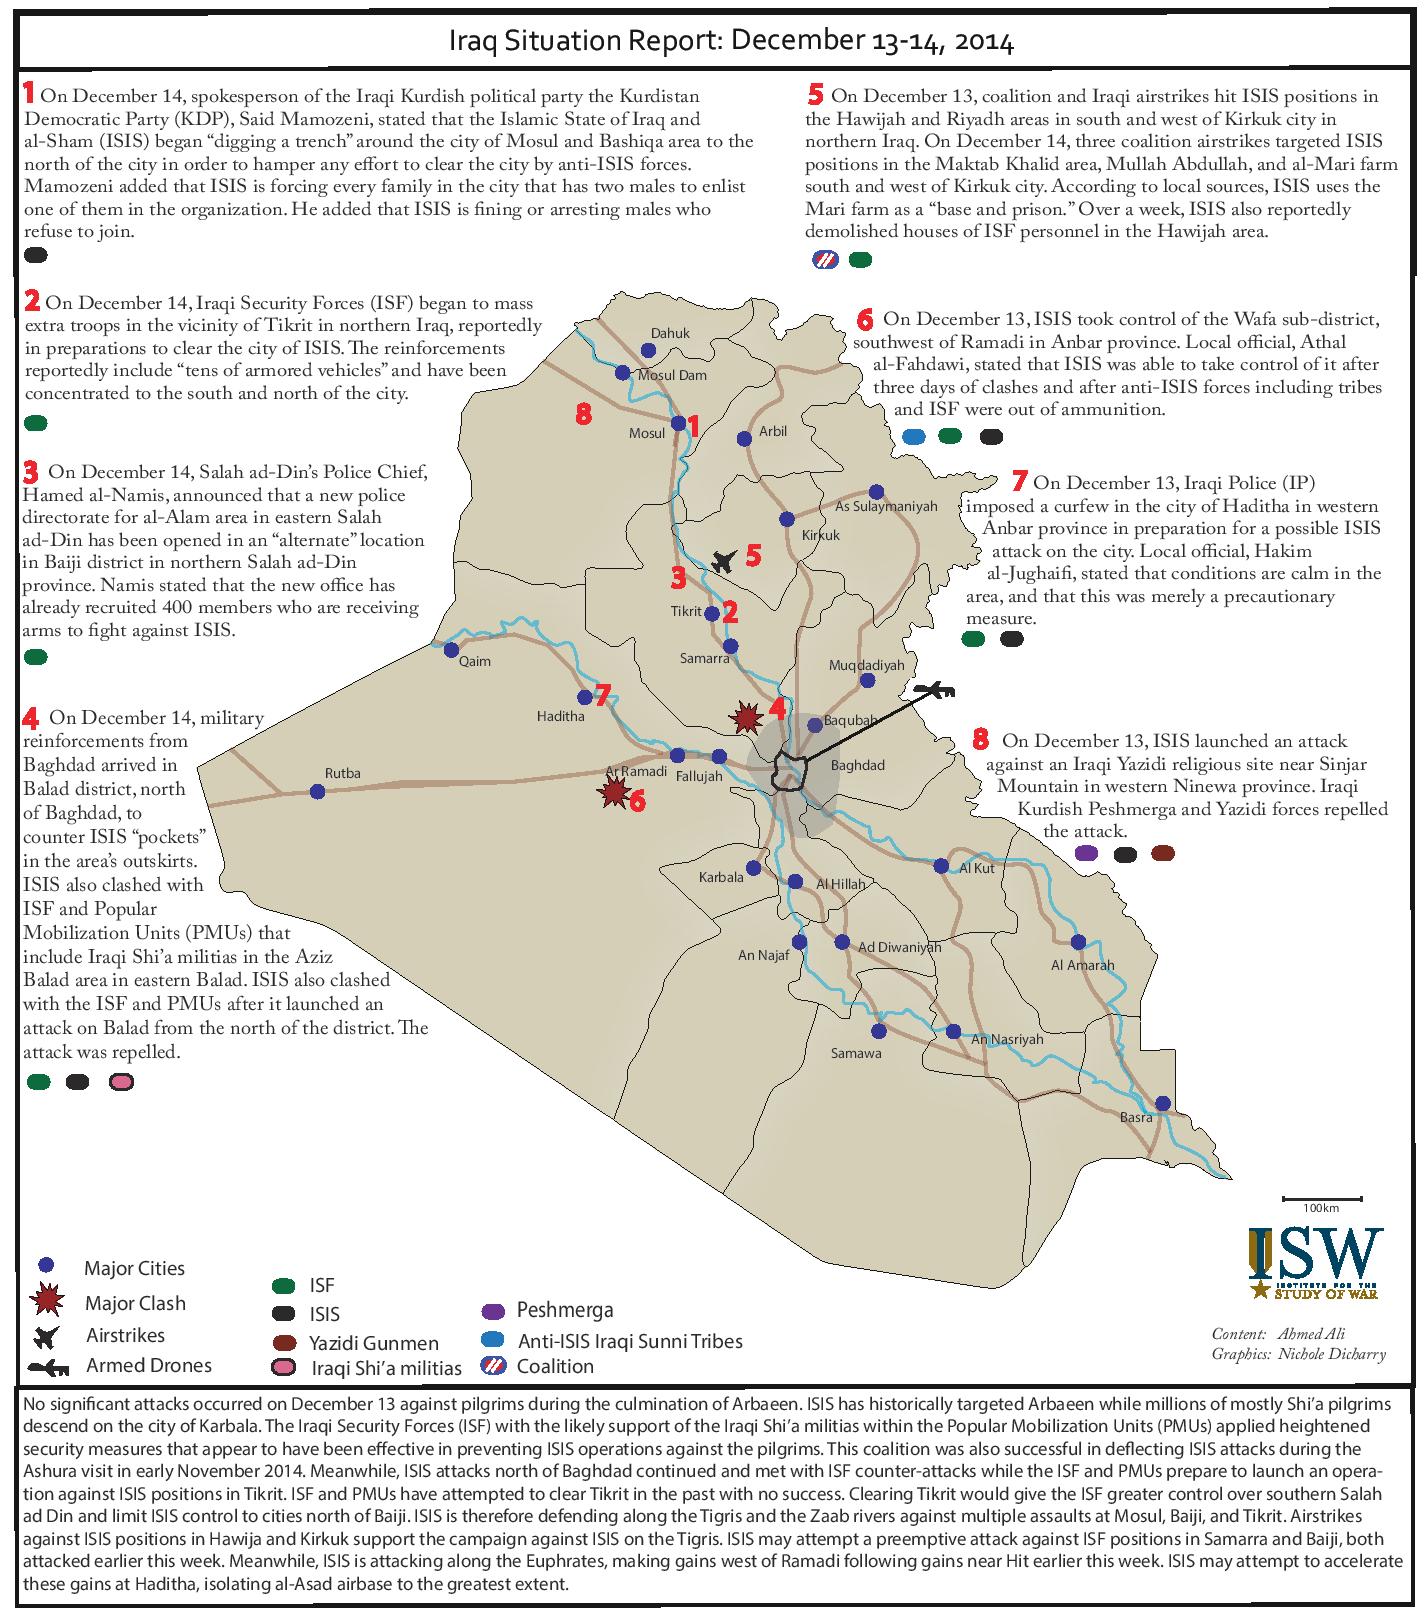 تقرير يكشف اوضاع العراق خلال يومي 13-14 كانون الاول/ديسمبر 2014